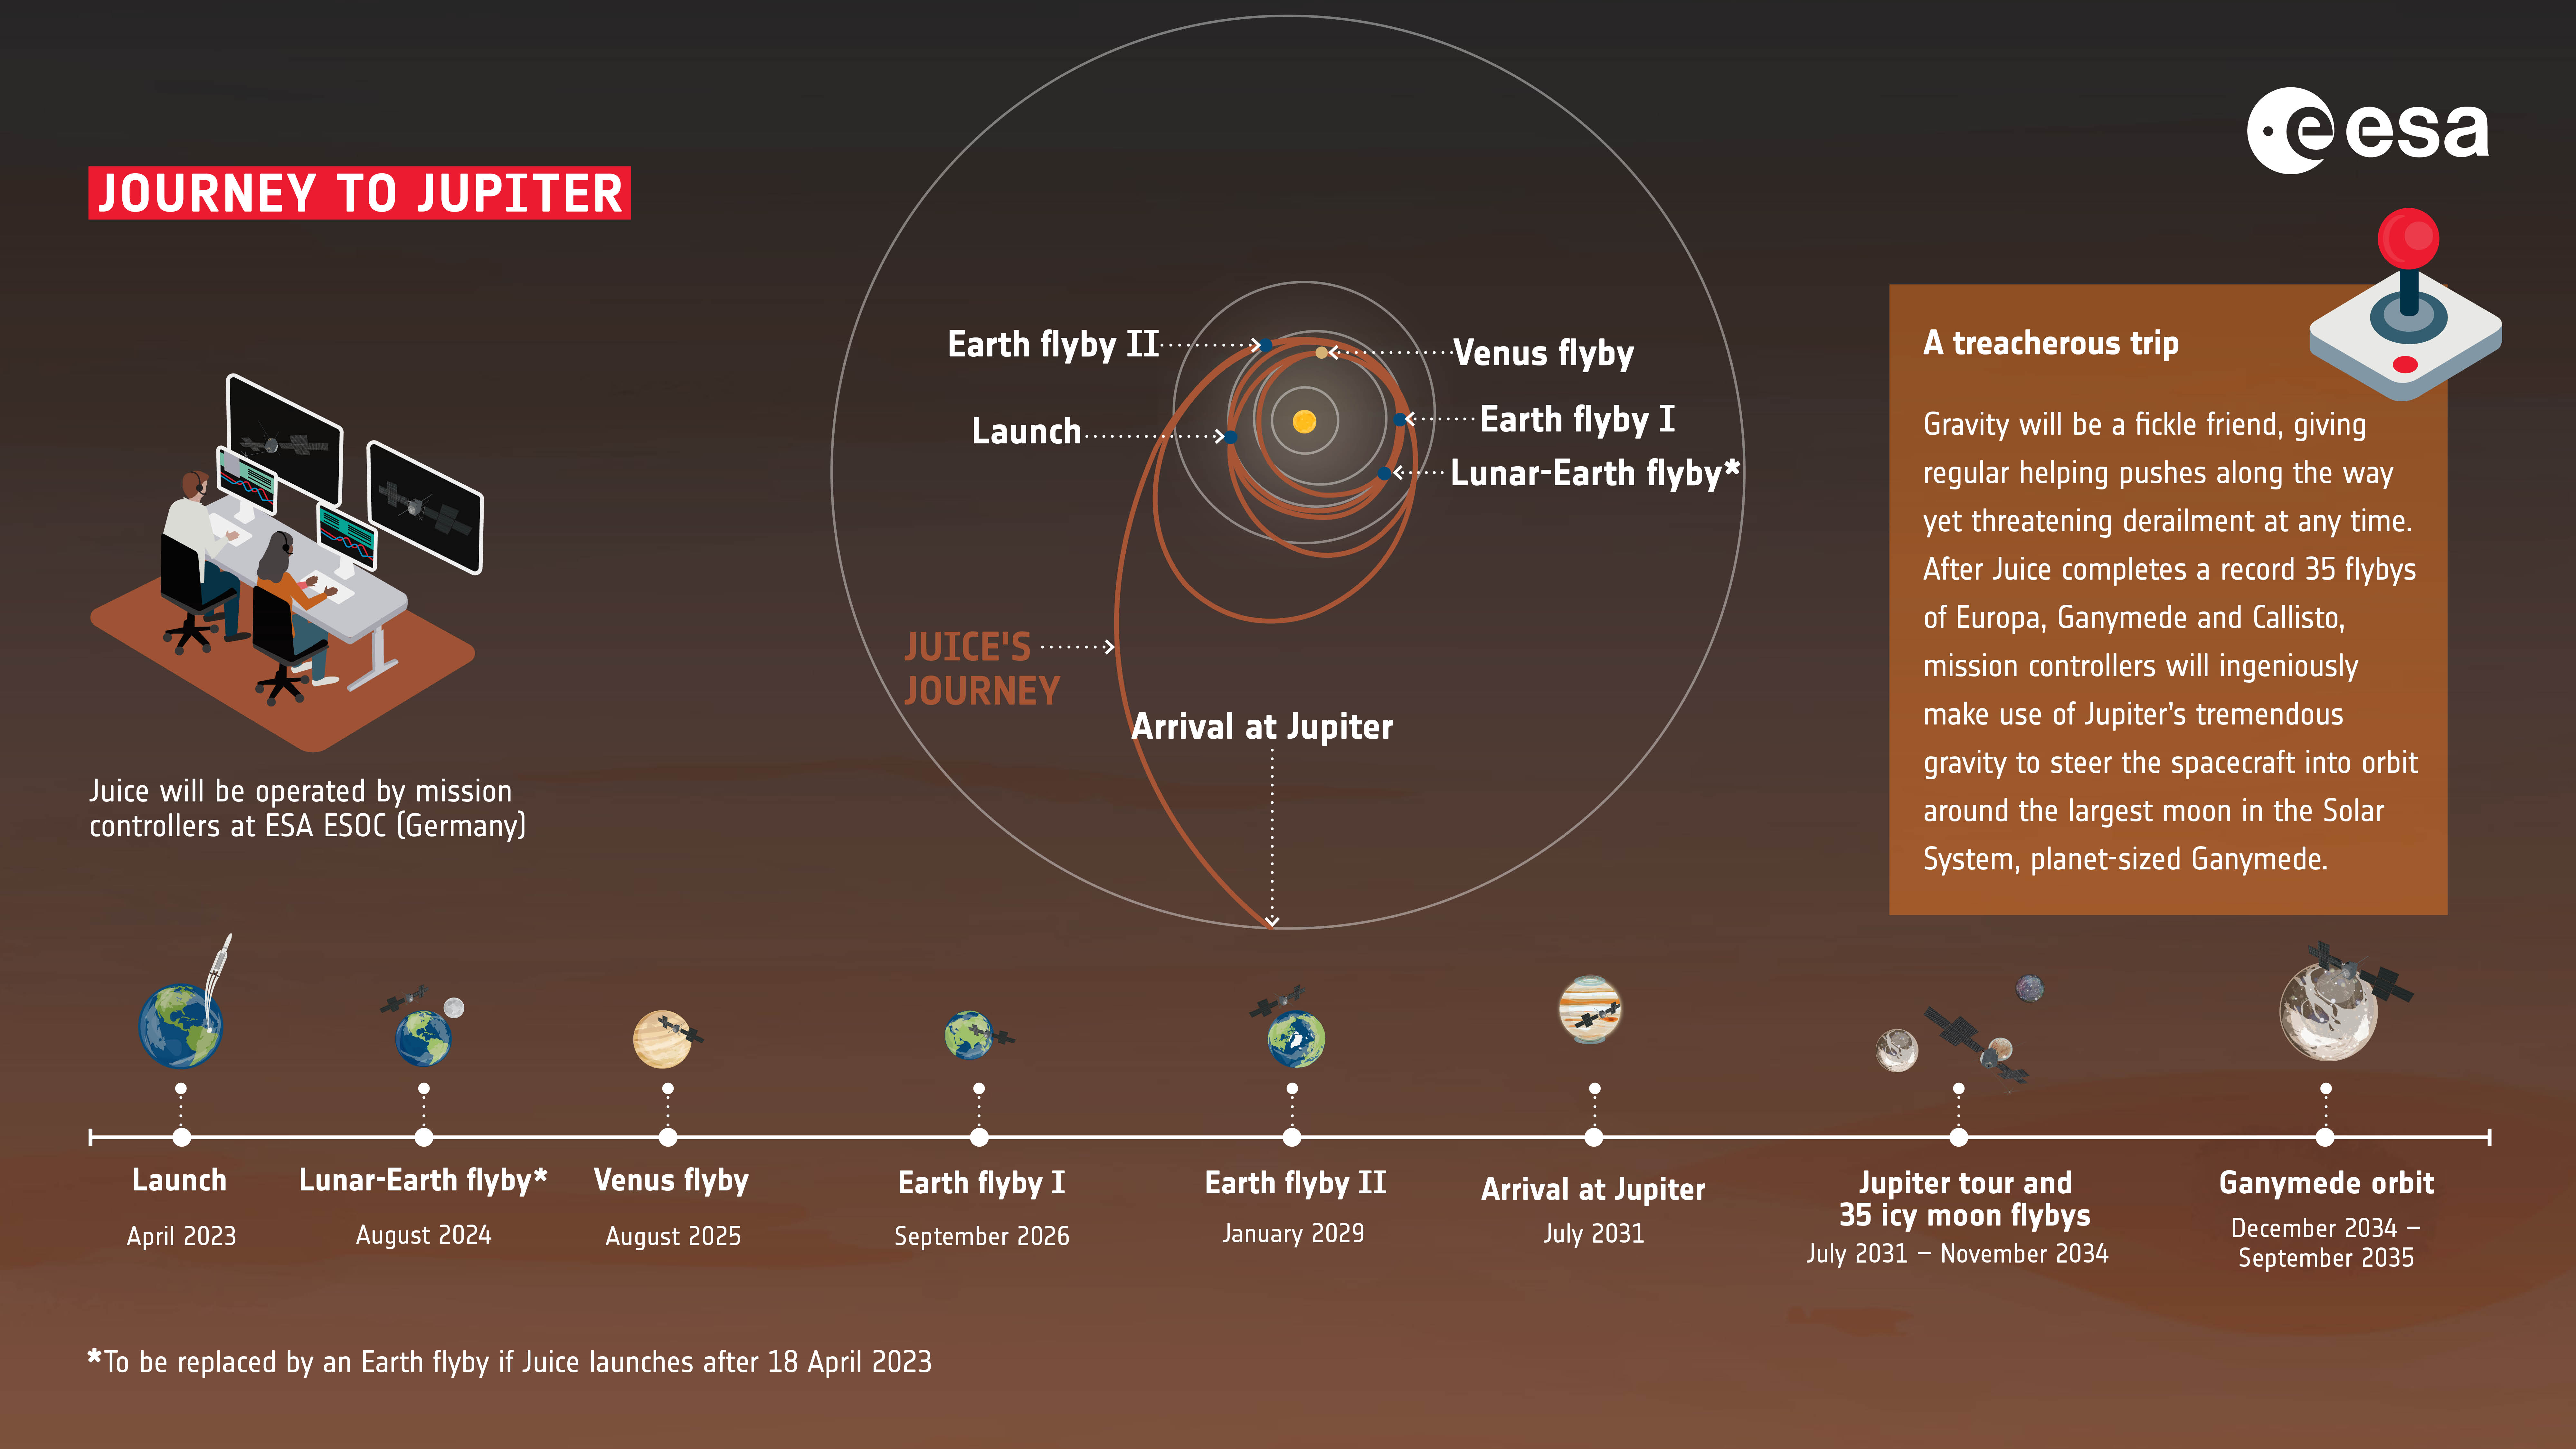 Una cronologia della missione JUICE, incluso il suo viaggio verso Giove.